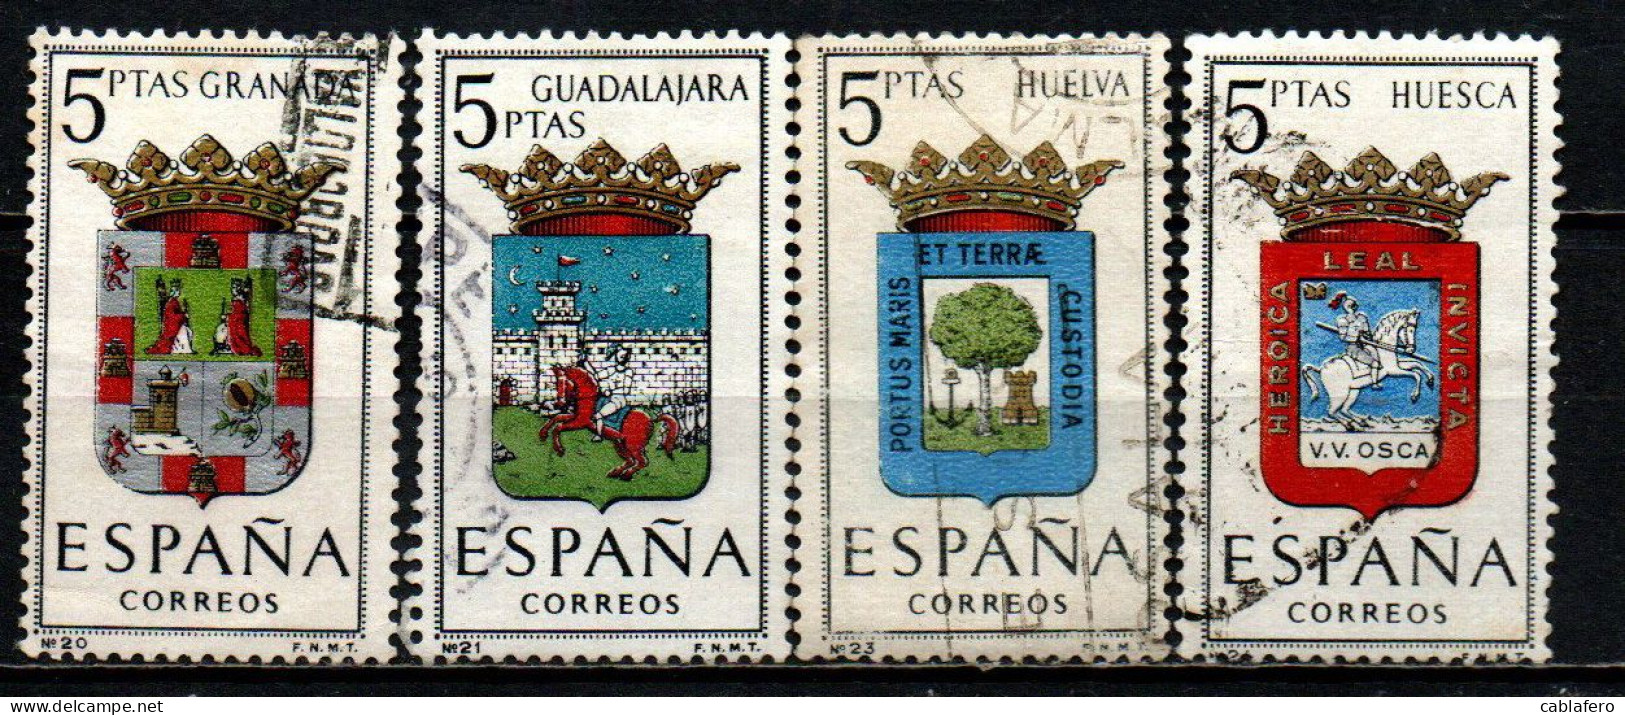 SPAGNA - 1963 - STEMMI DELLE PROVINCE SPAGNOLE: GRANADA, GUADALAJARA, HUELVA, HUESCA - USATI - Gebraucht